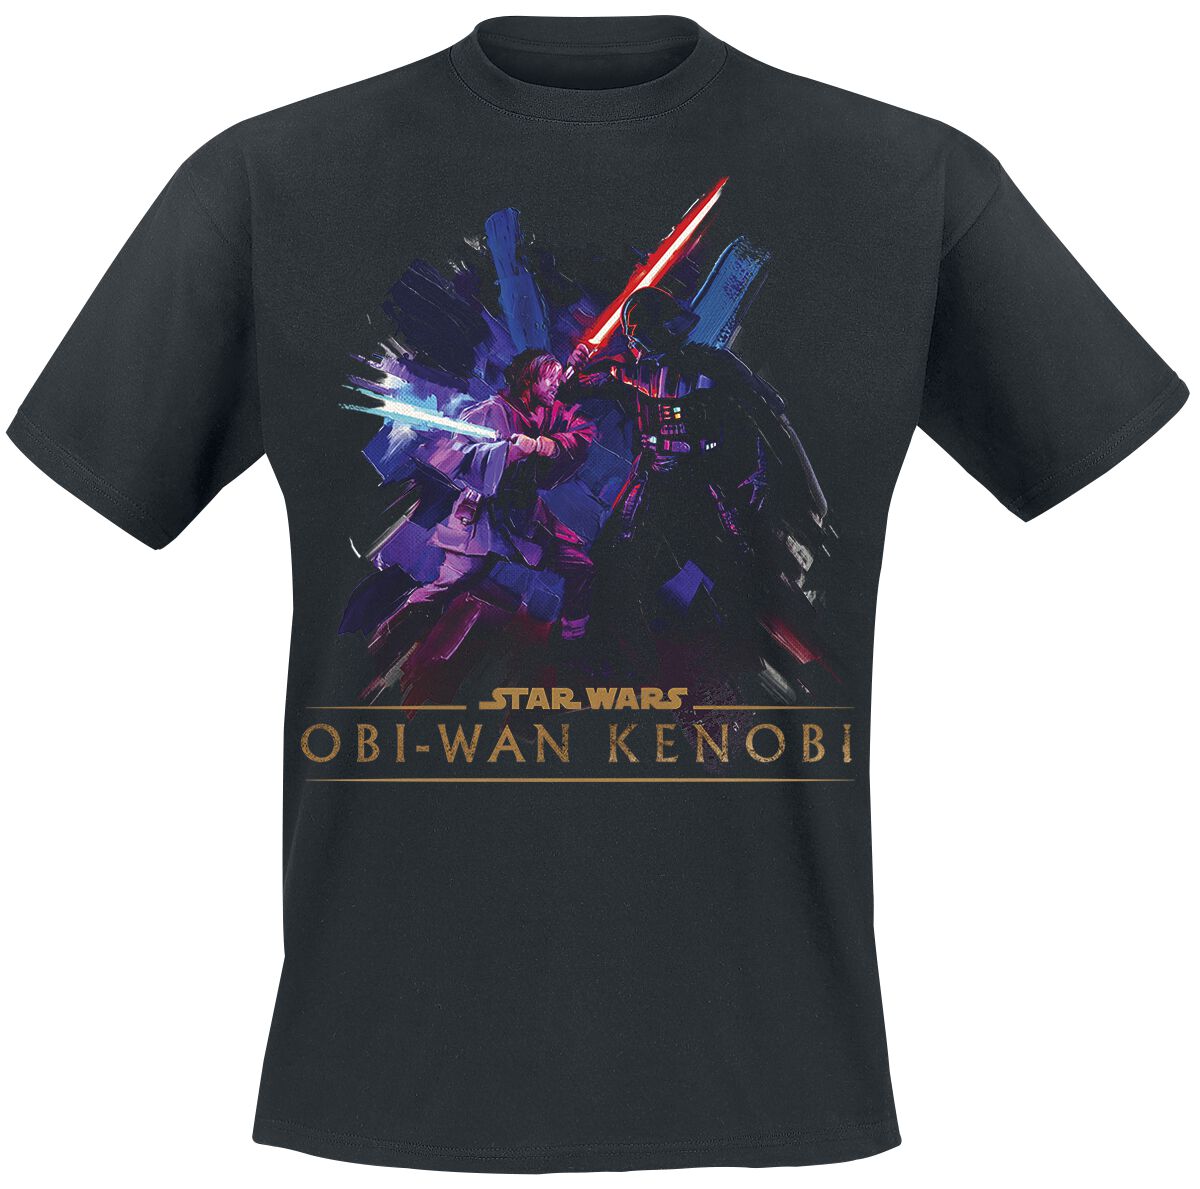 Star Wars T-Shirt - Obi-Wan Kenobi - Vintage - S bis XXL - für Männer - Größe M - schwarz  - EMP exklusives Merchandise!